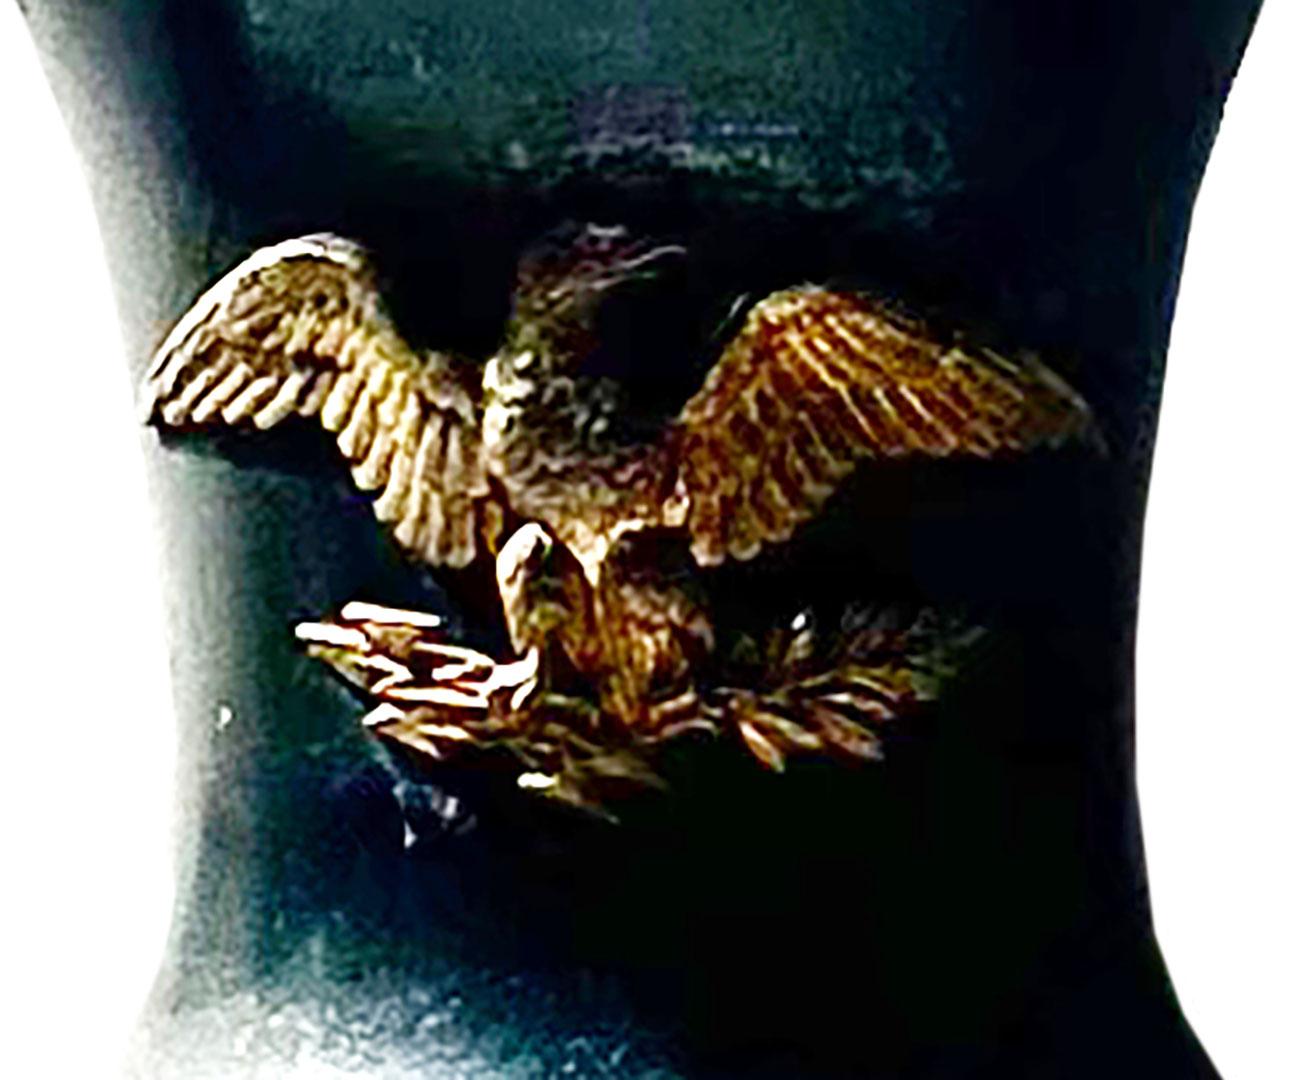 Garniture empire française en bronze et marbre. Le bronze présente par endroits une patine foncée.  Un aigle français en bronze doré sur la face avant et une couronne au fond de l'urne. Vers les années 1830.